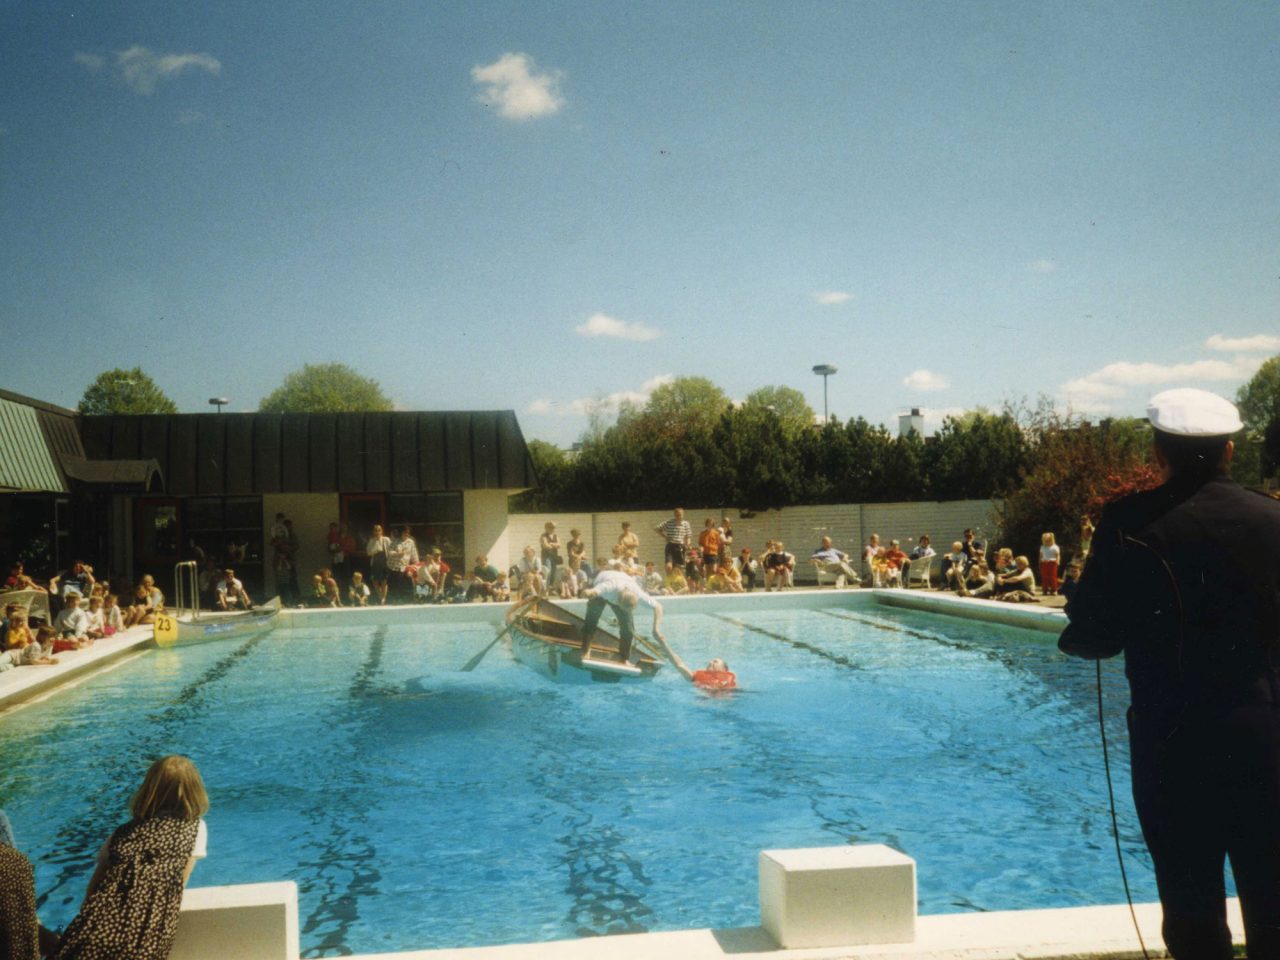 Publik runt badbassäng där man står i en liten roddbåt och visar livräddning av en person som ligger i bassängen.